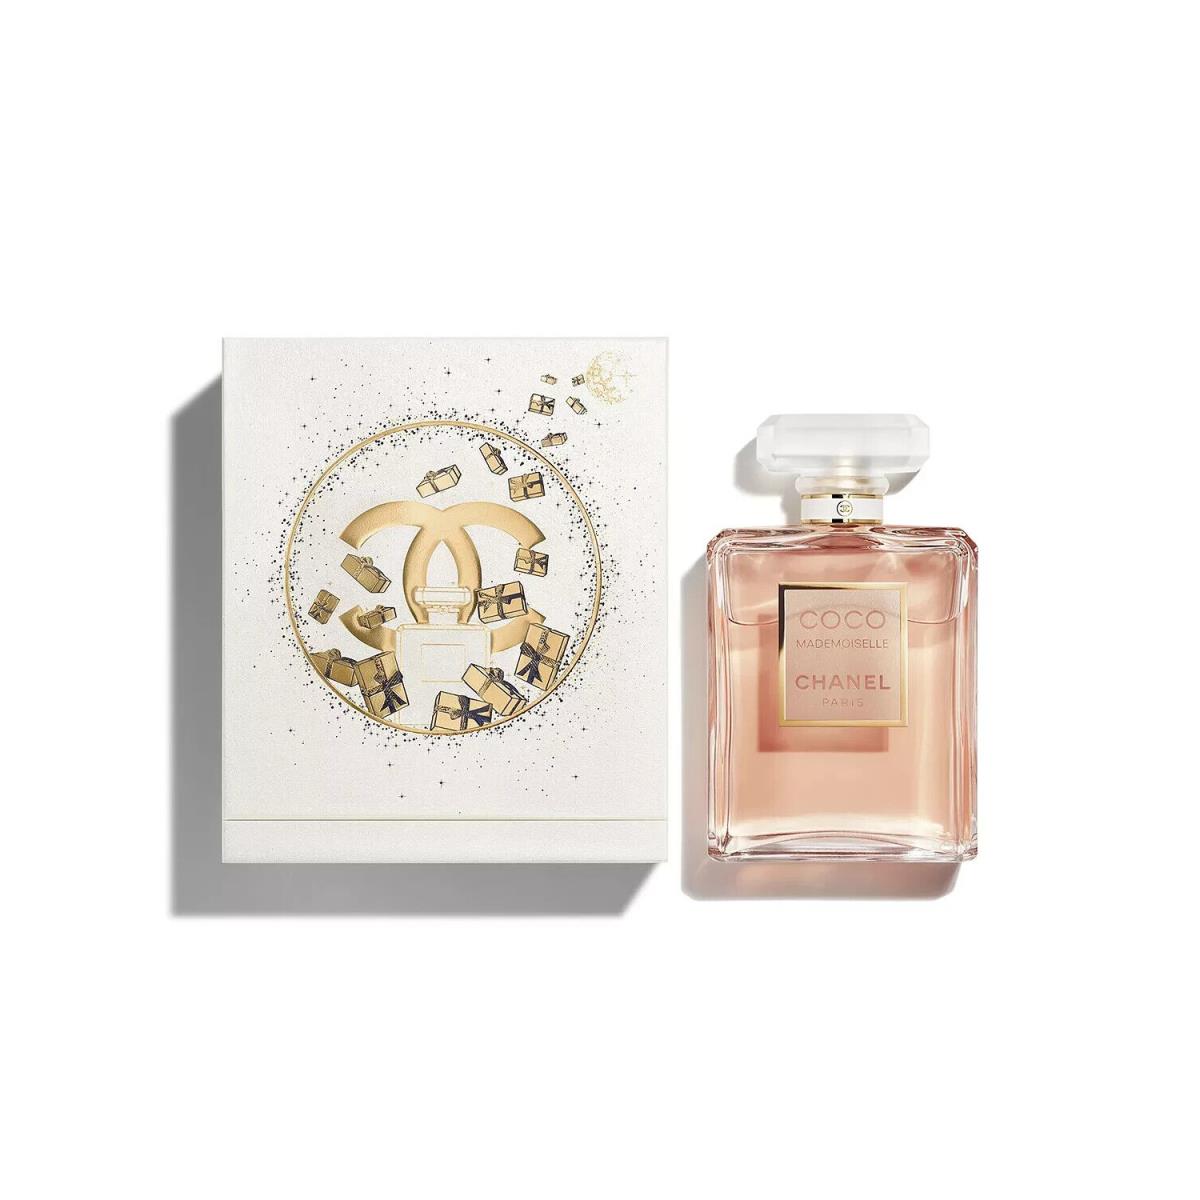 Coco Chanel Mademoiselle 3.4 Fl. oz Eau De Parfum Spray Holiday Limited Edition